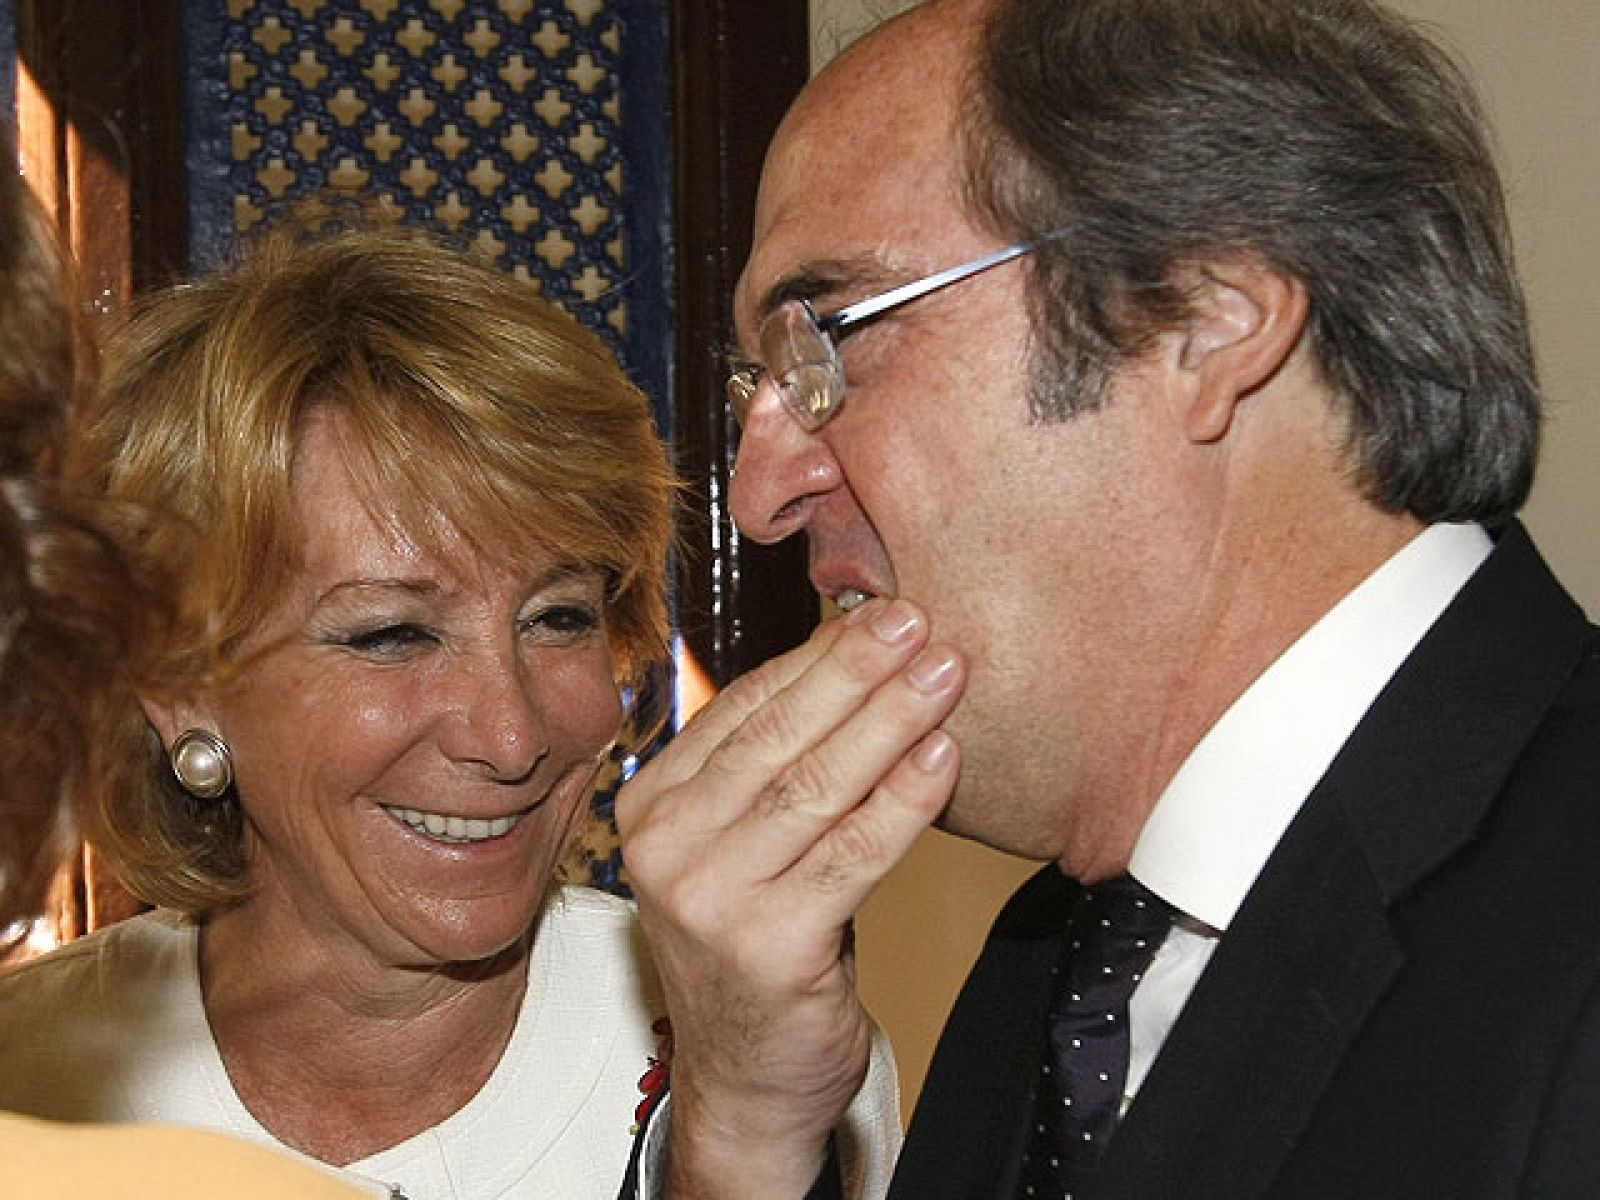 Aguirre, entre risas, pide a Gabilondo en persona que dimita